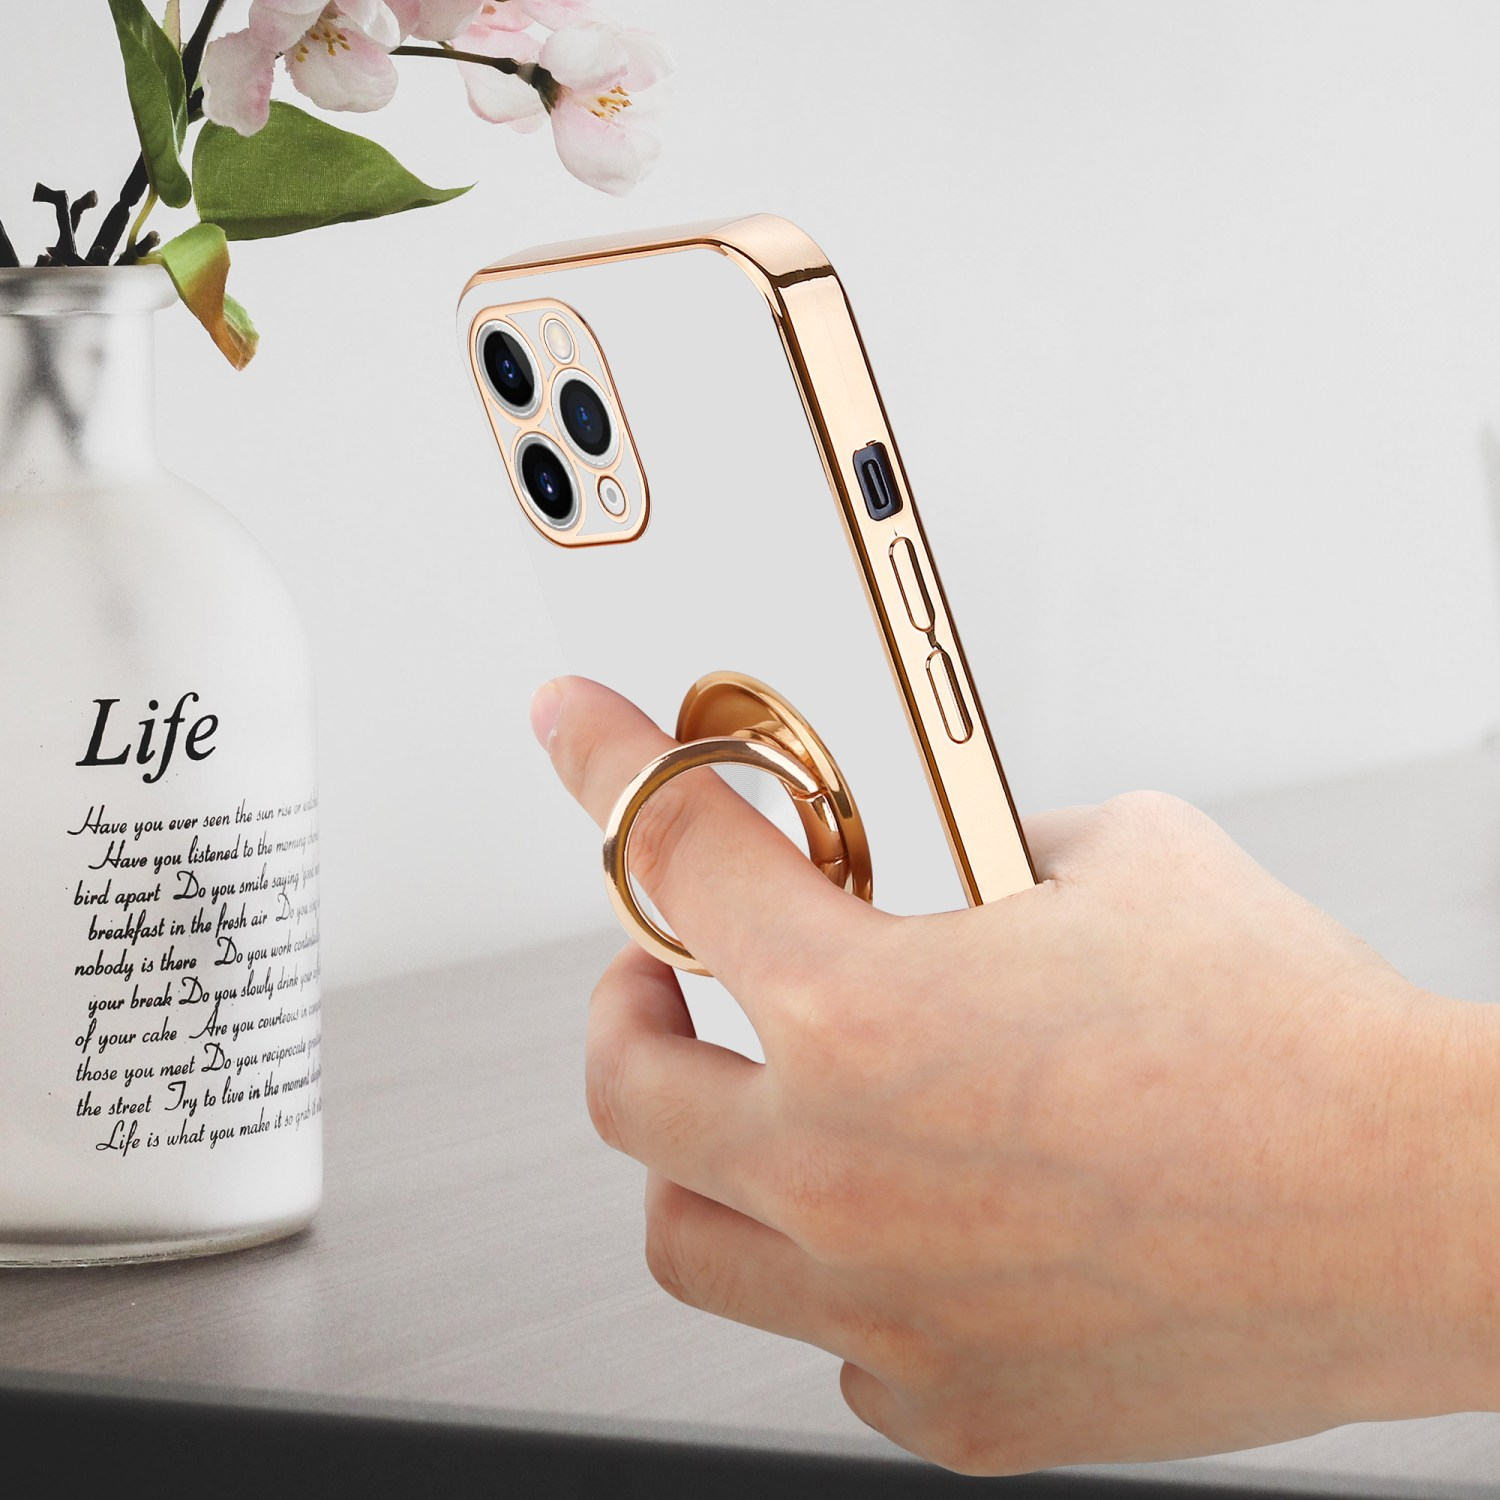 CADORABO Hülle mit Kameraschutz und Weiß iPhone Gold PRO, magnetischer Autohalterung, Backcover, - 11 Apple, Glossy